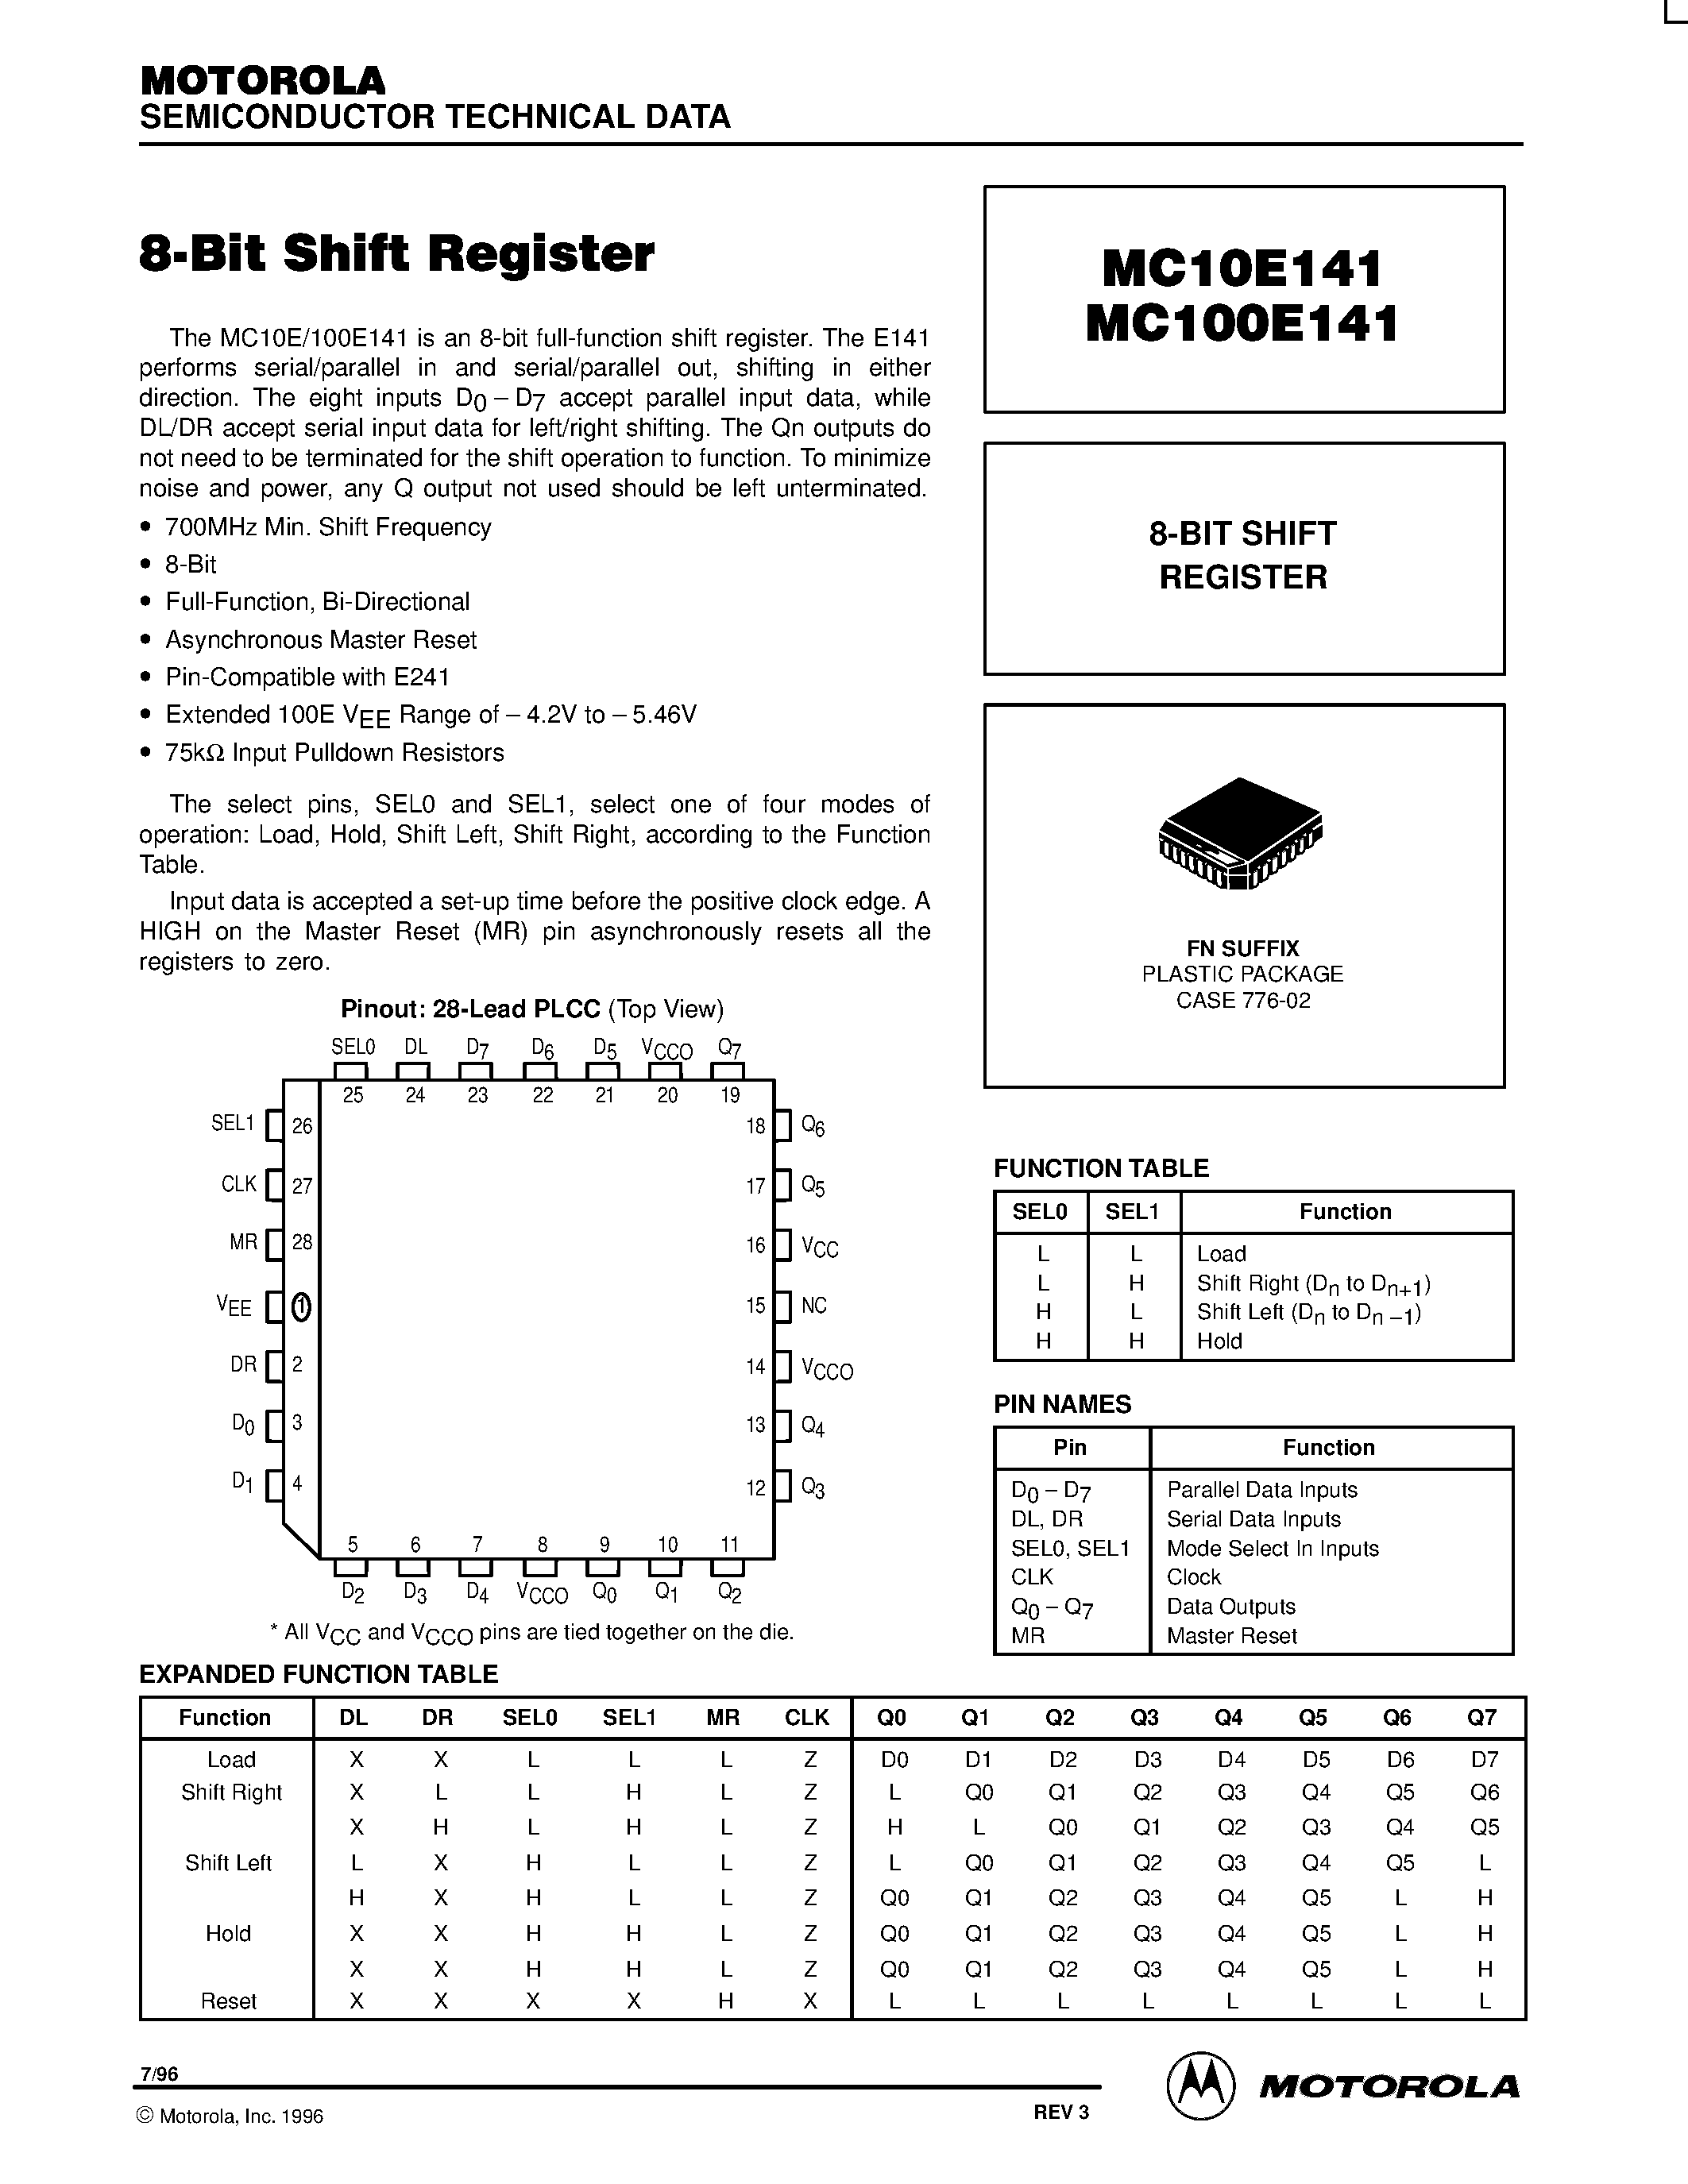 Даташит MC100E141FN - 8-BIT SHIFT REGISTER страница 1